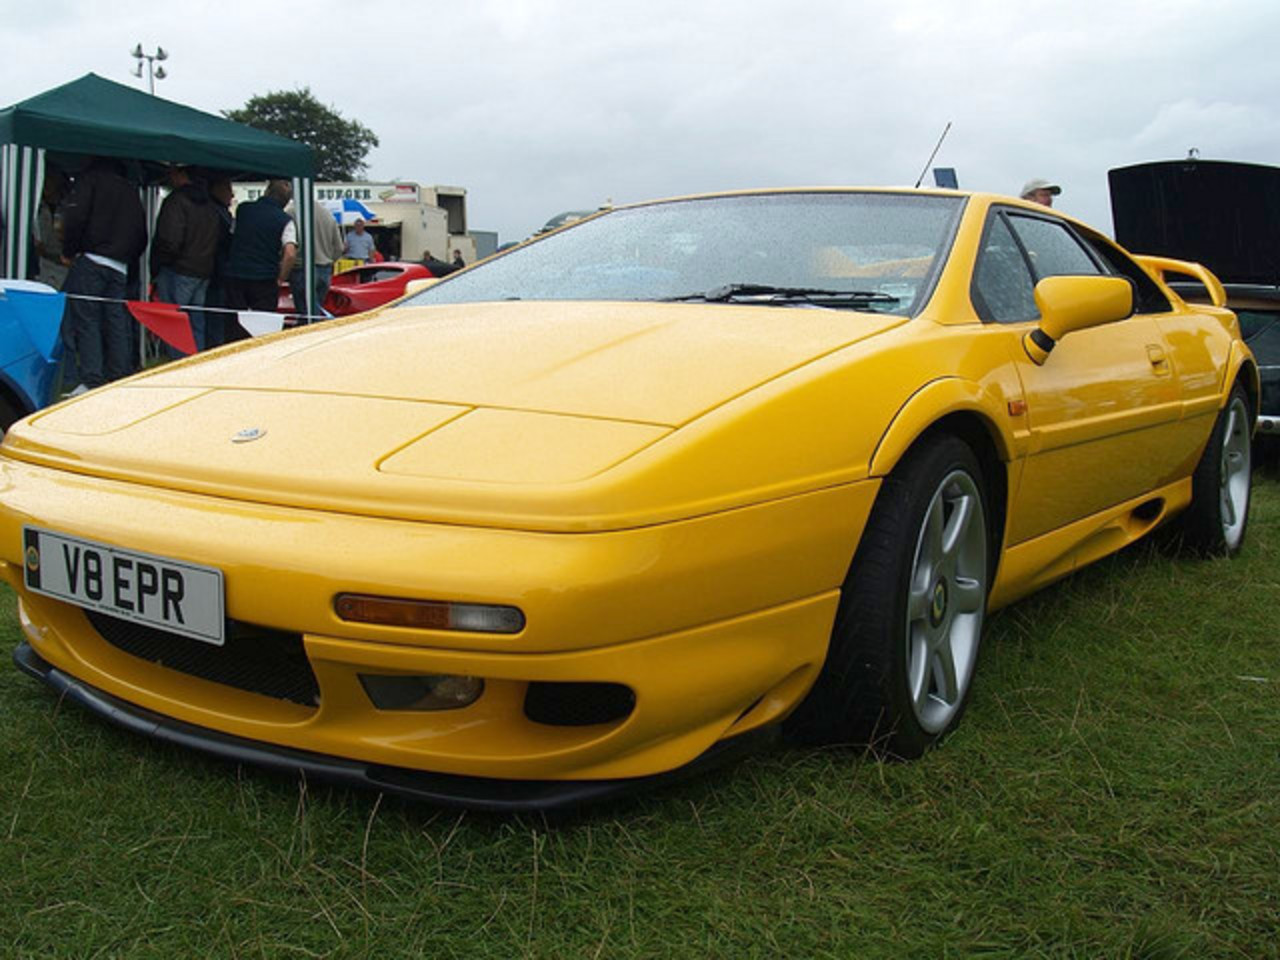 Lotus Esprit GT V8 Sports Cars - 2000 | Flickr - Photo Sharing!